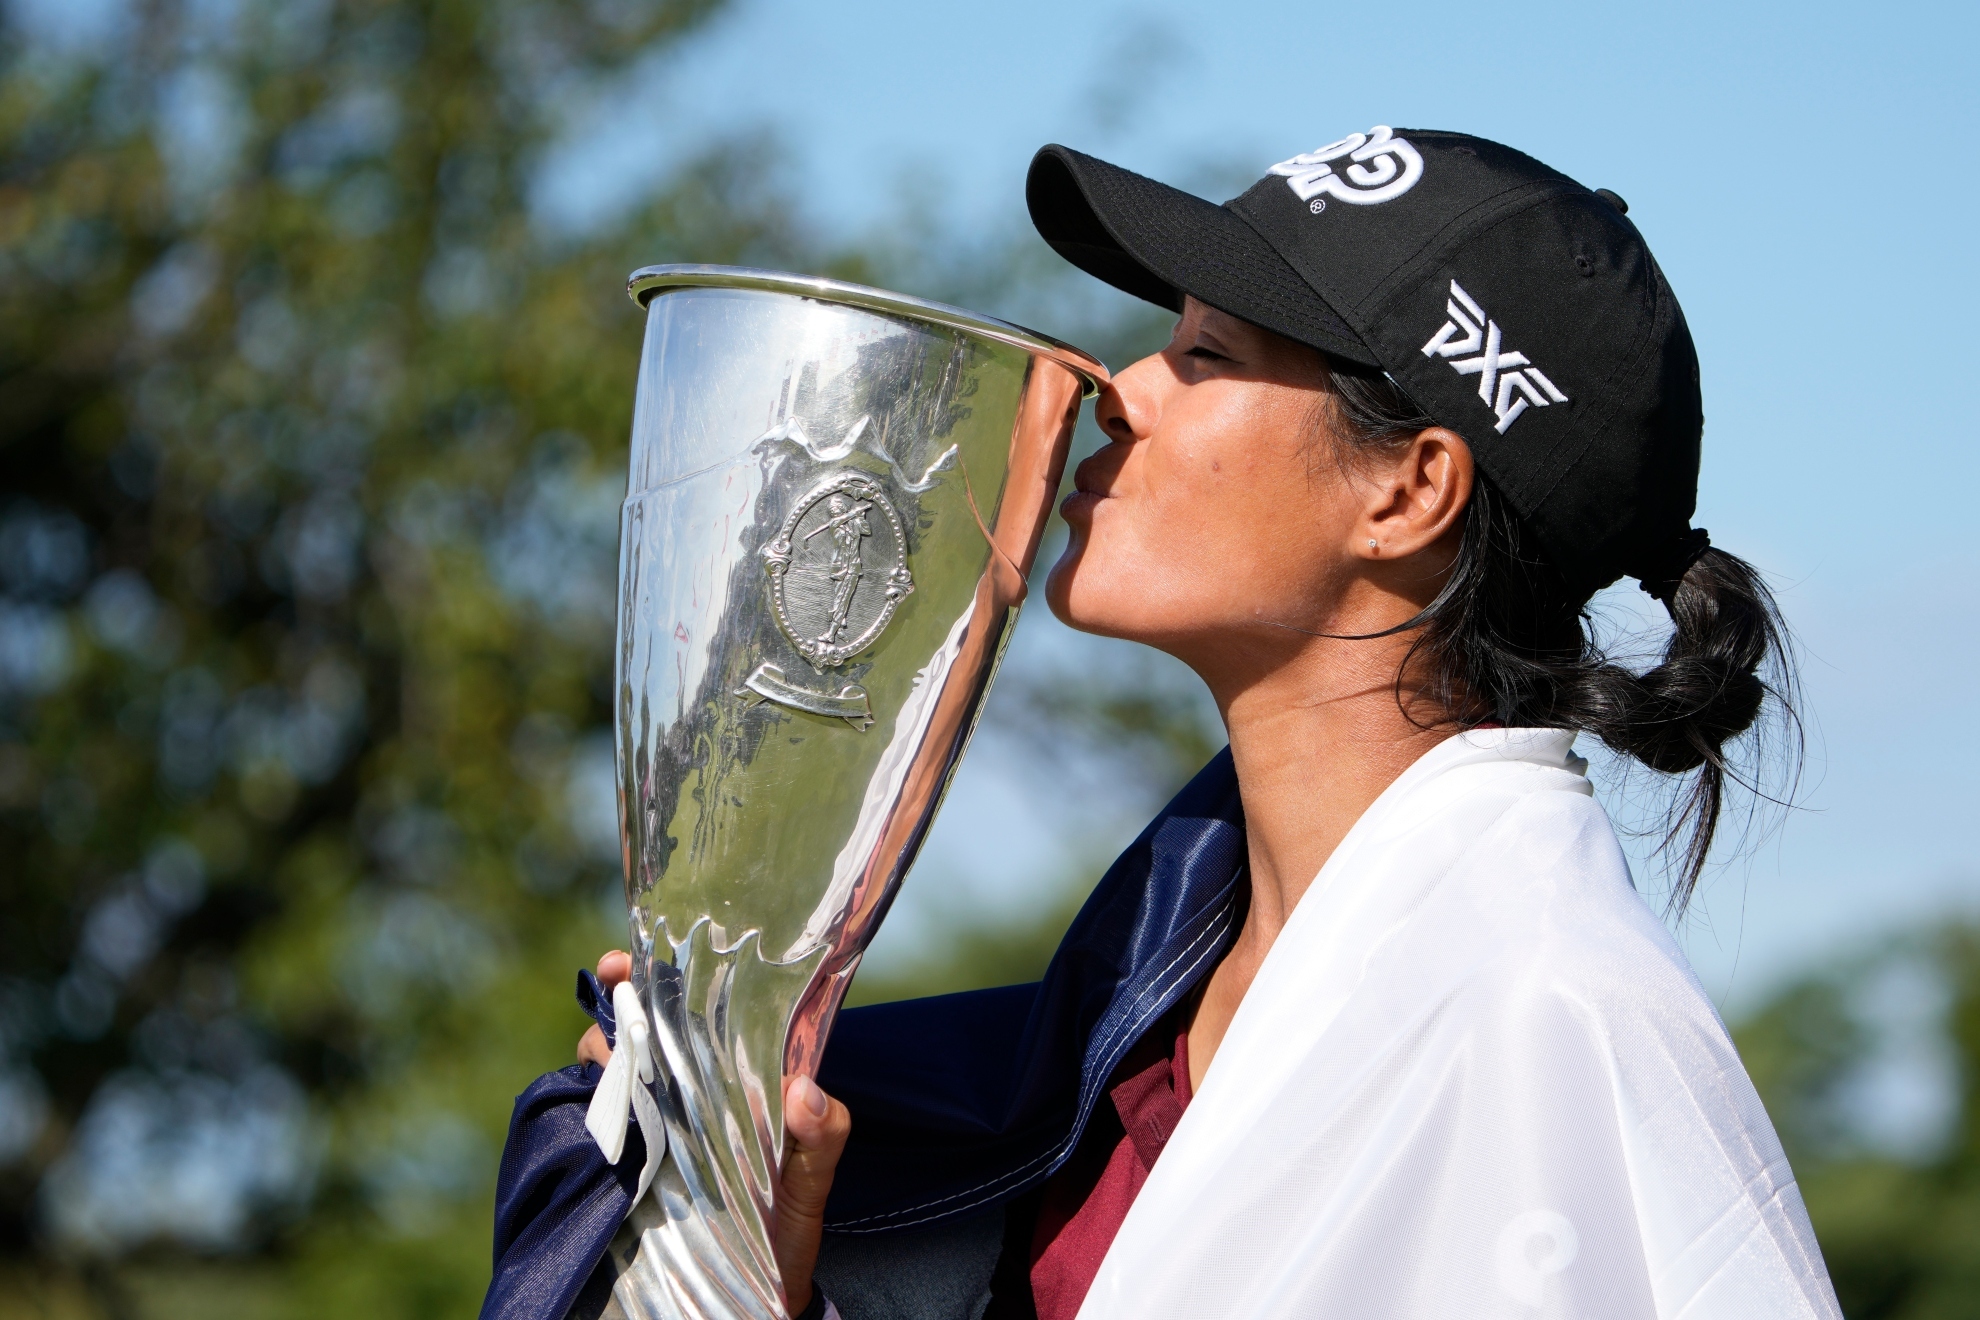 Celine Boutier hace historia en el golf francs ganando el Campeonato Evian